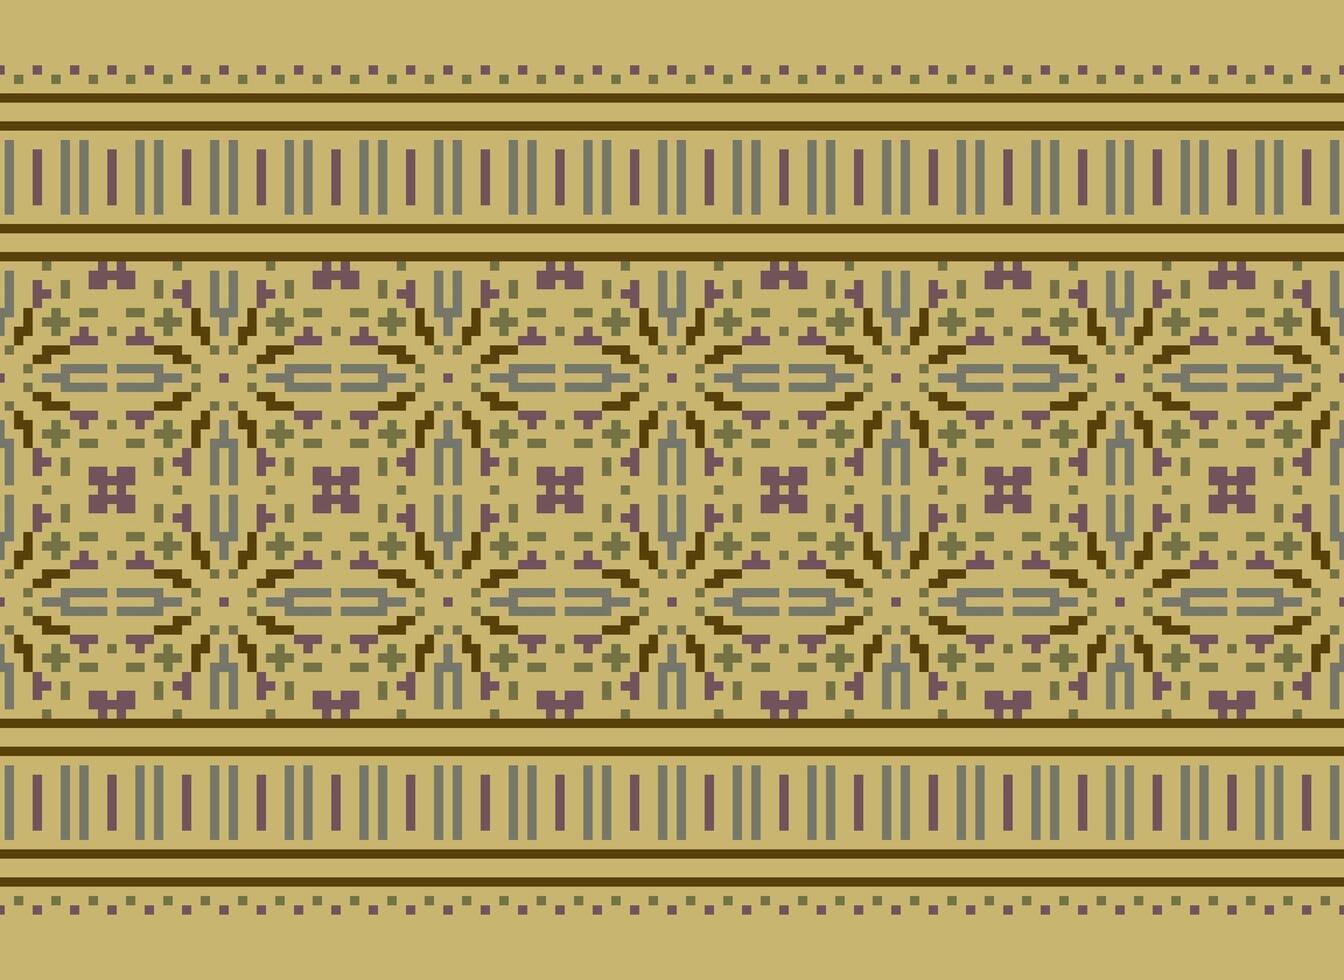 pixel kruis steek patroon met bloemen ontwerpen. traditioneel kruis steek handwerk. meetkundig etnisch patroon, borduurwerk, textiel versiering, kleding stof, hand- gestikt patroon, pixel kunst. vector